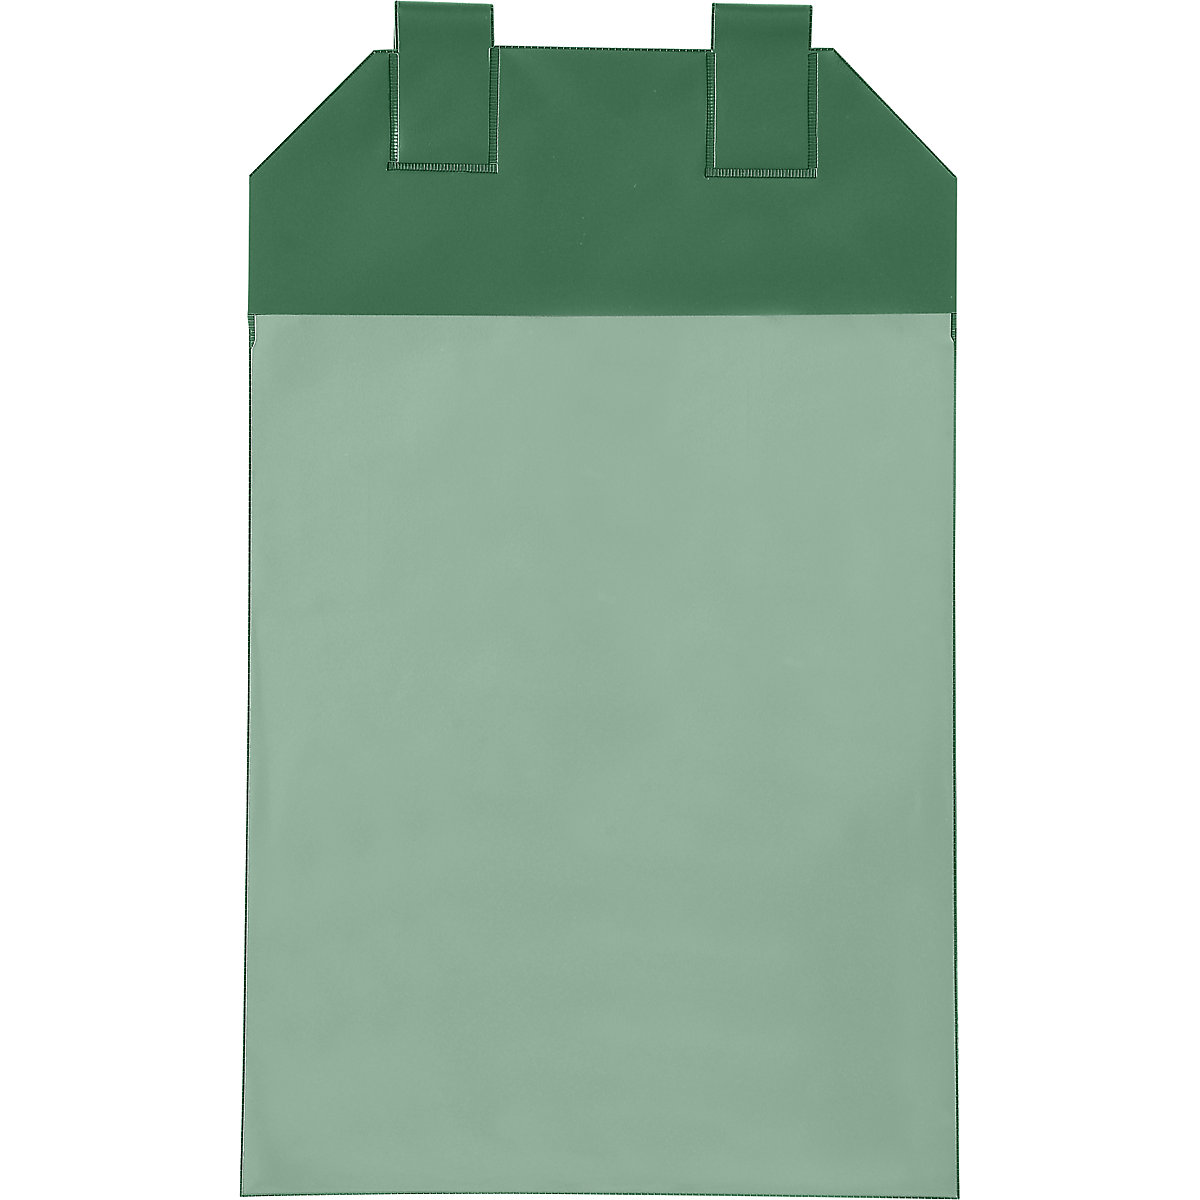 Gitterboxtaschen, VE 50 Stk, für Papierformat DIN A4, grün-3